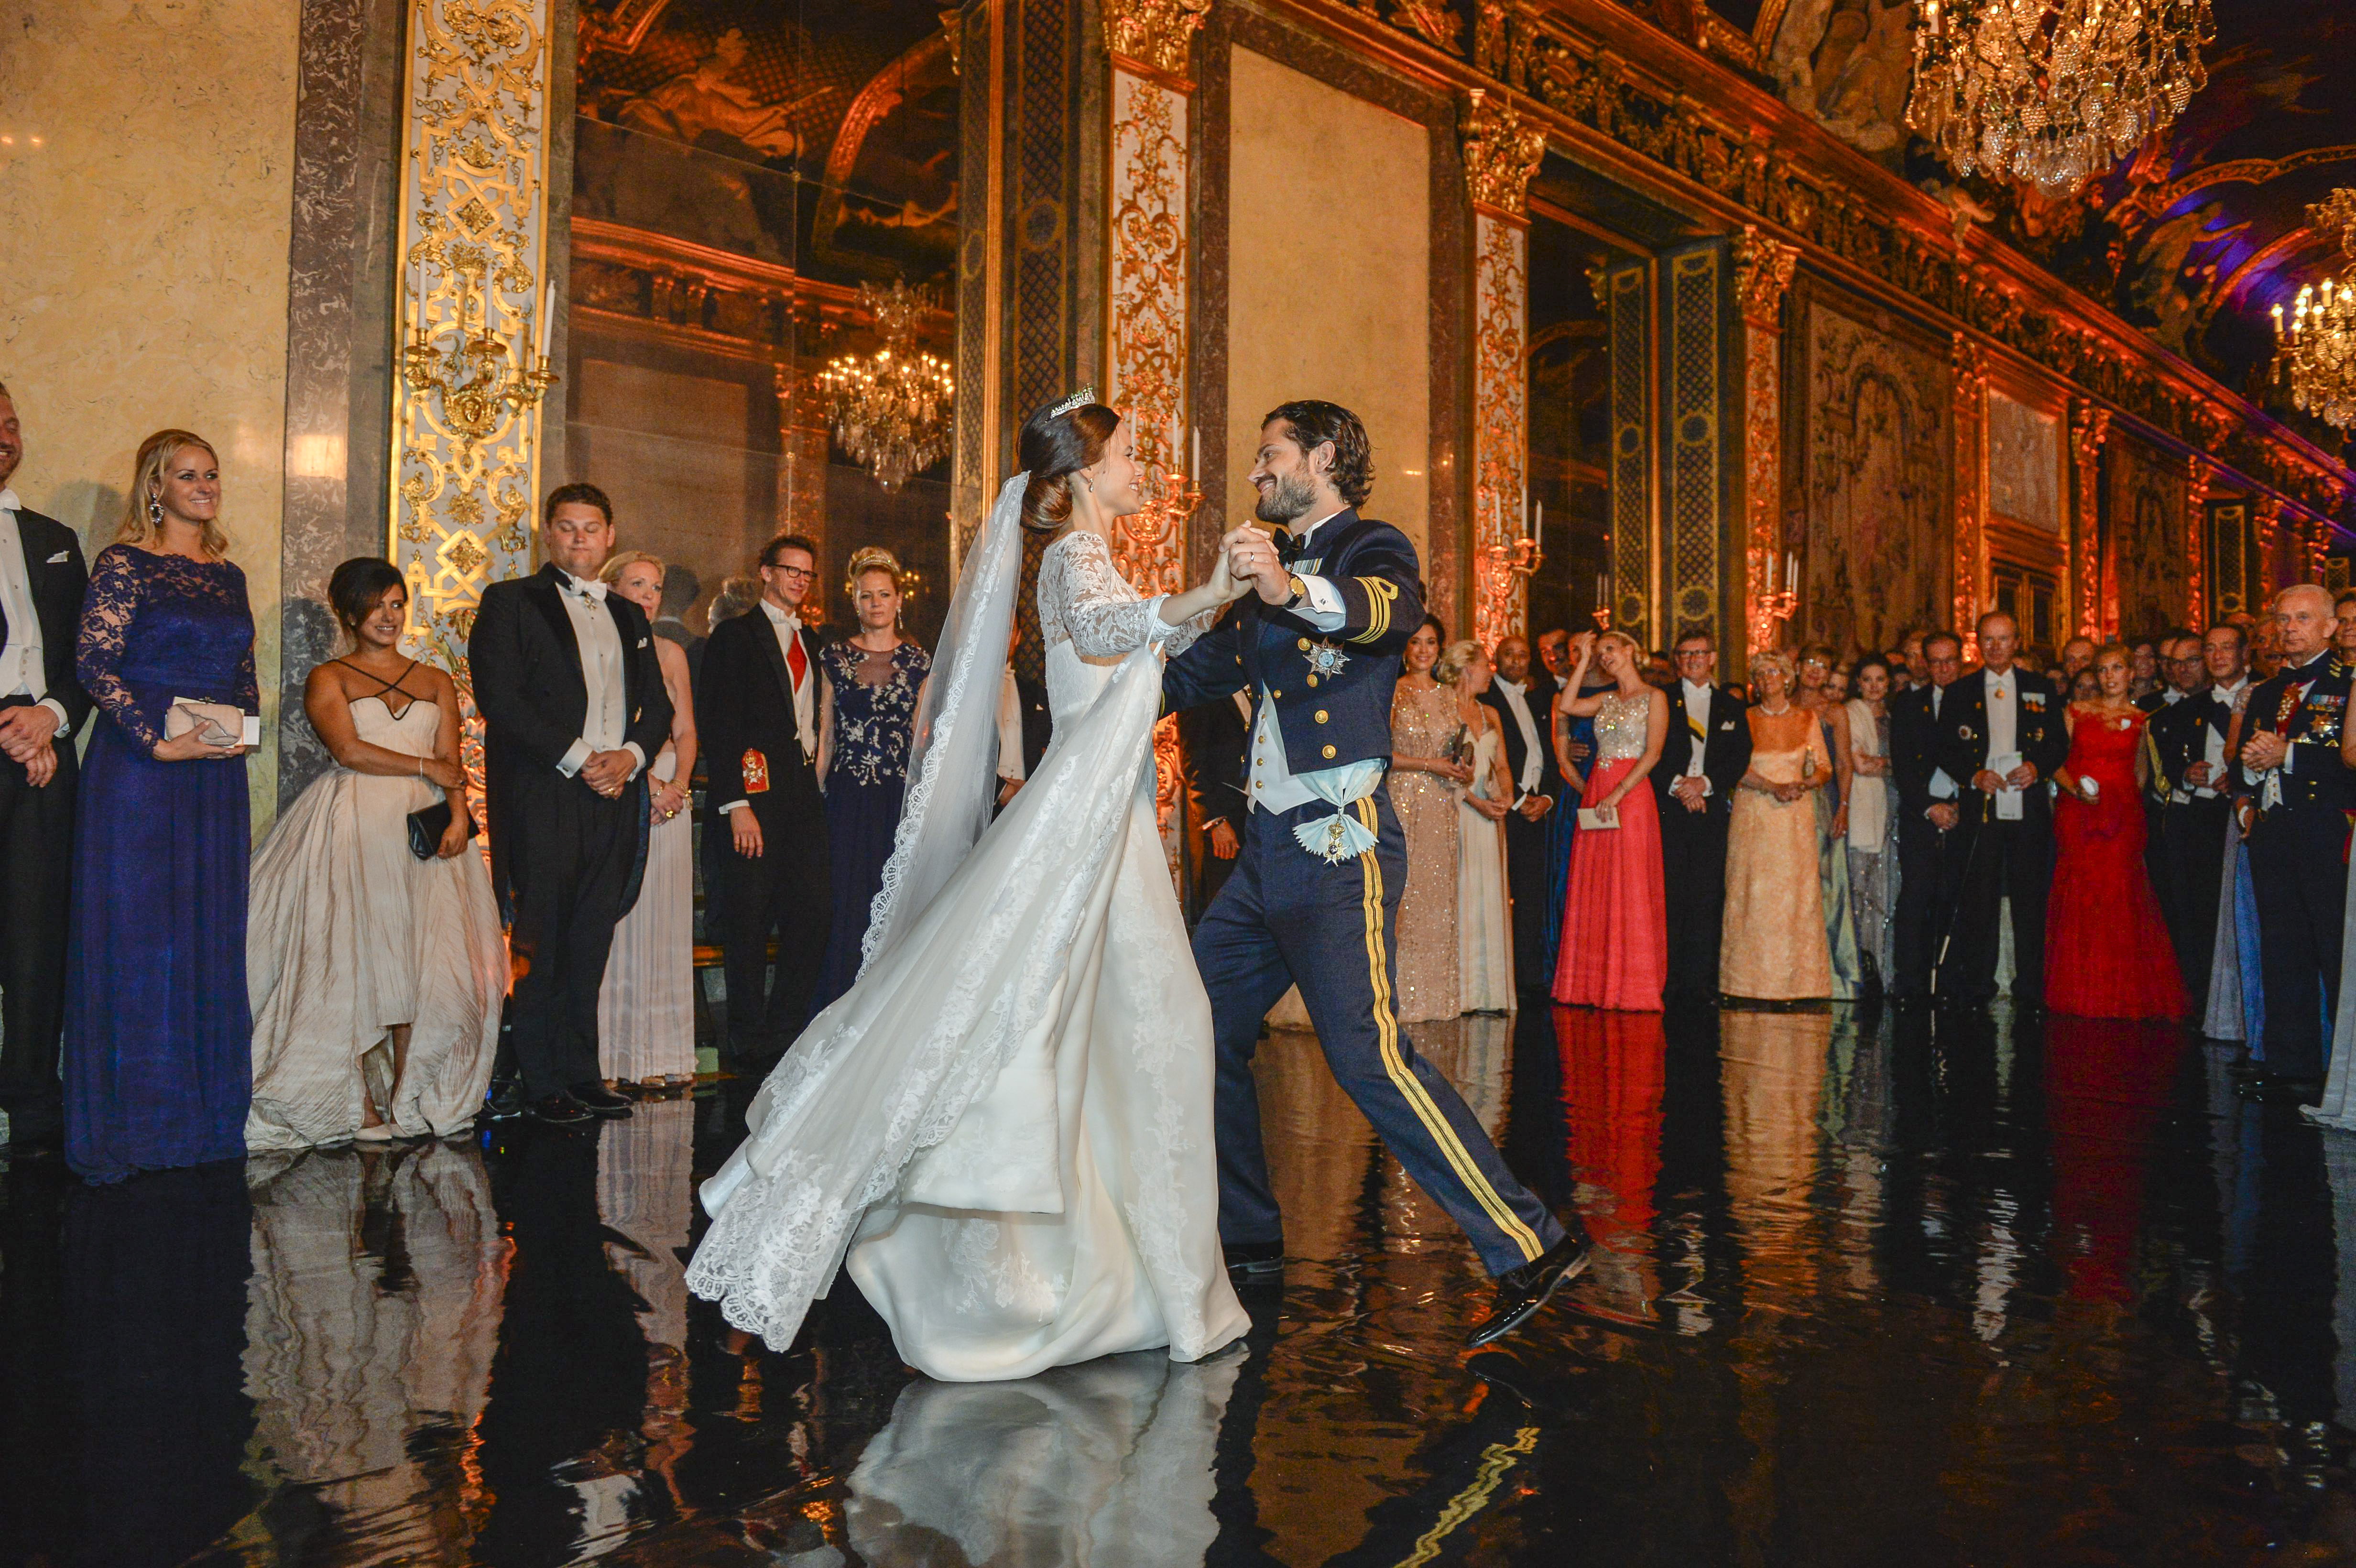 <p><strong>Швеция: Принц Карл Филип и принцеса София&nbsp;</strong></p>

<p>Принц Карл Филип от Швеция, второто дете на крал Карл XVI Густав и кралица Силвия, се ожени за София Хелквист в Стокхолм през 2015 г.</p>